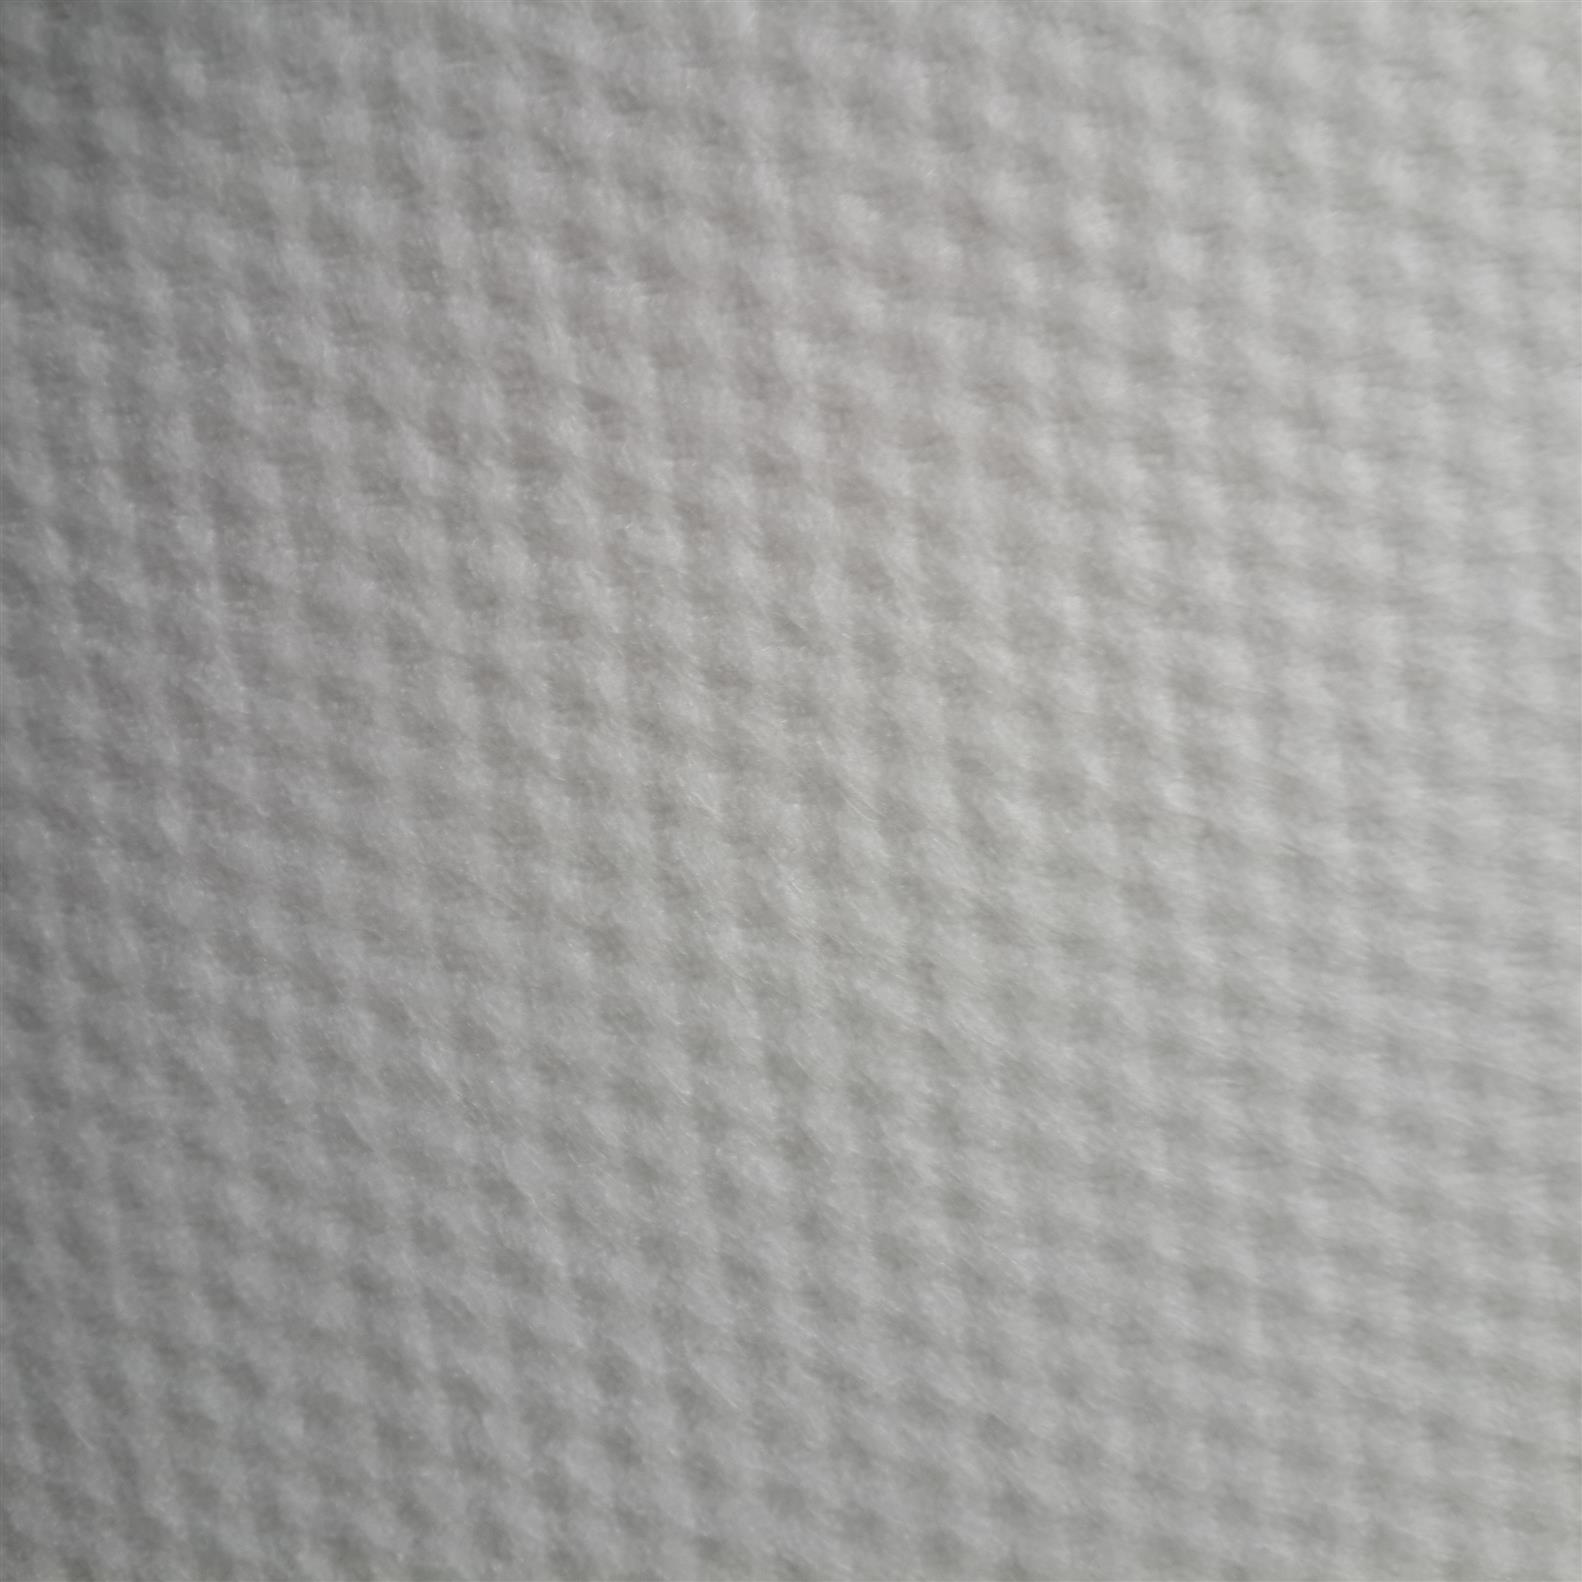 水刺布 涤纶粘胶地板清洁水刺无纺布制造商